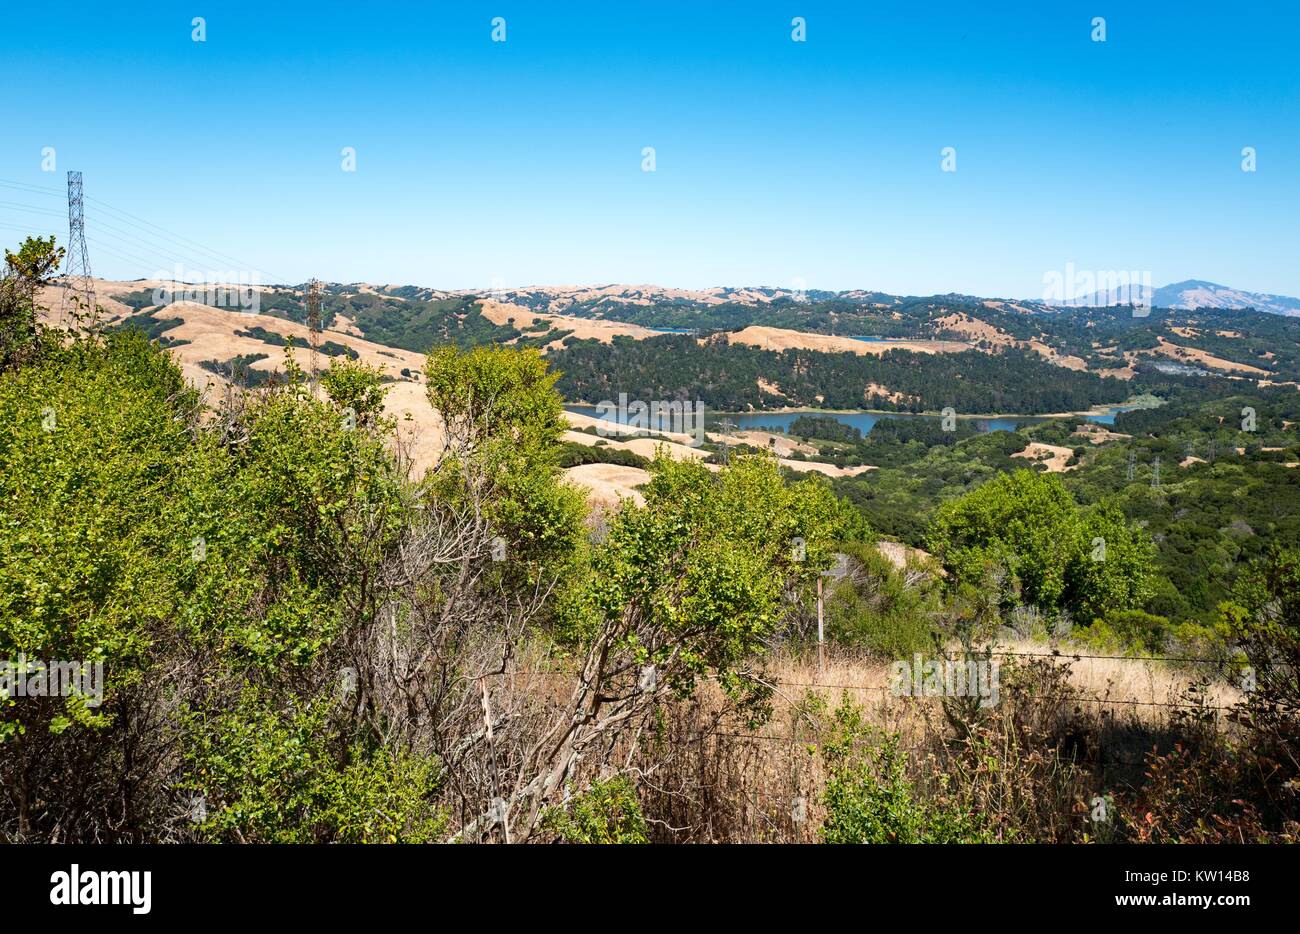 San Pablo Reservoir, the Orinda hills, and Mount Diablo, viewed from Nimitz Way, in Tilden Regional Park, Berkeley, California, July, 2016. Stock Photo